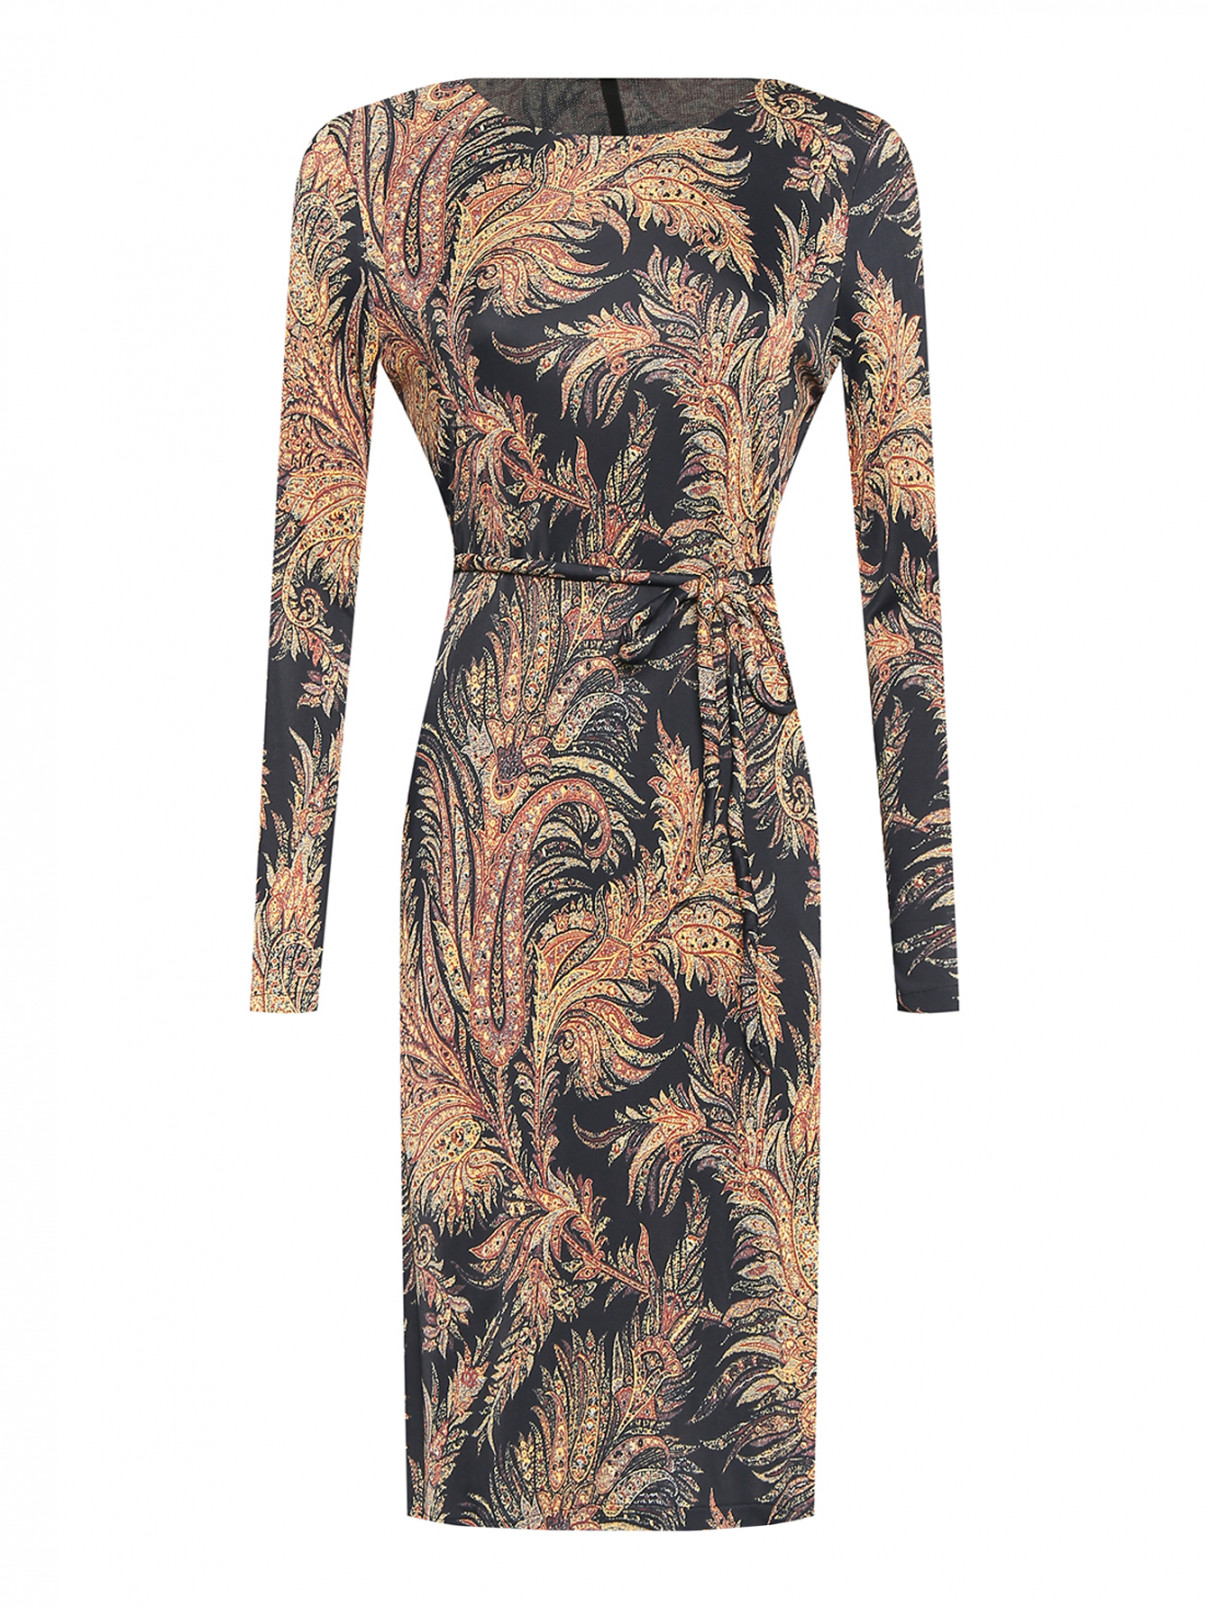 Платье из вискозы с поясом и узорм Etro  –  Общий вид  – Цвет:  Черный